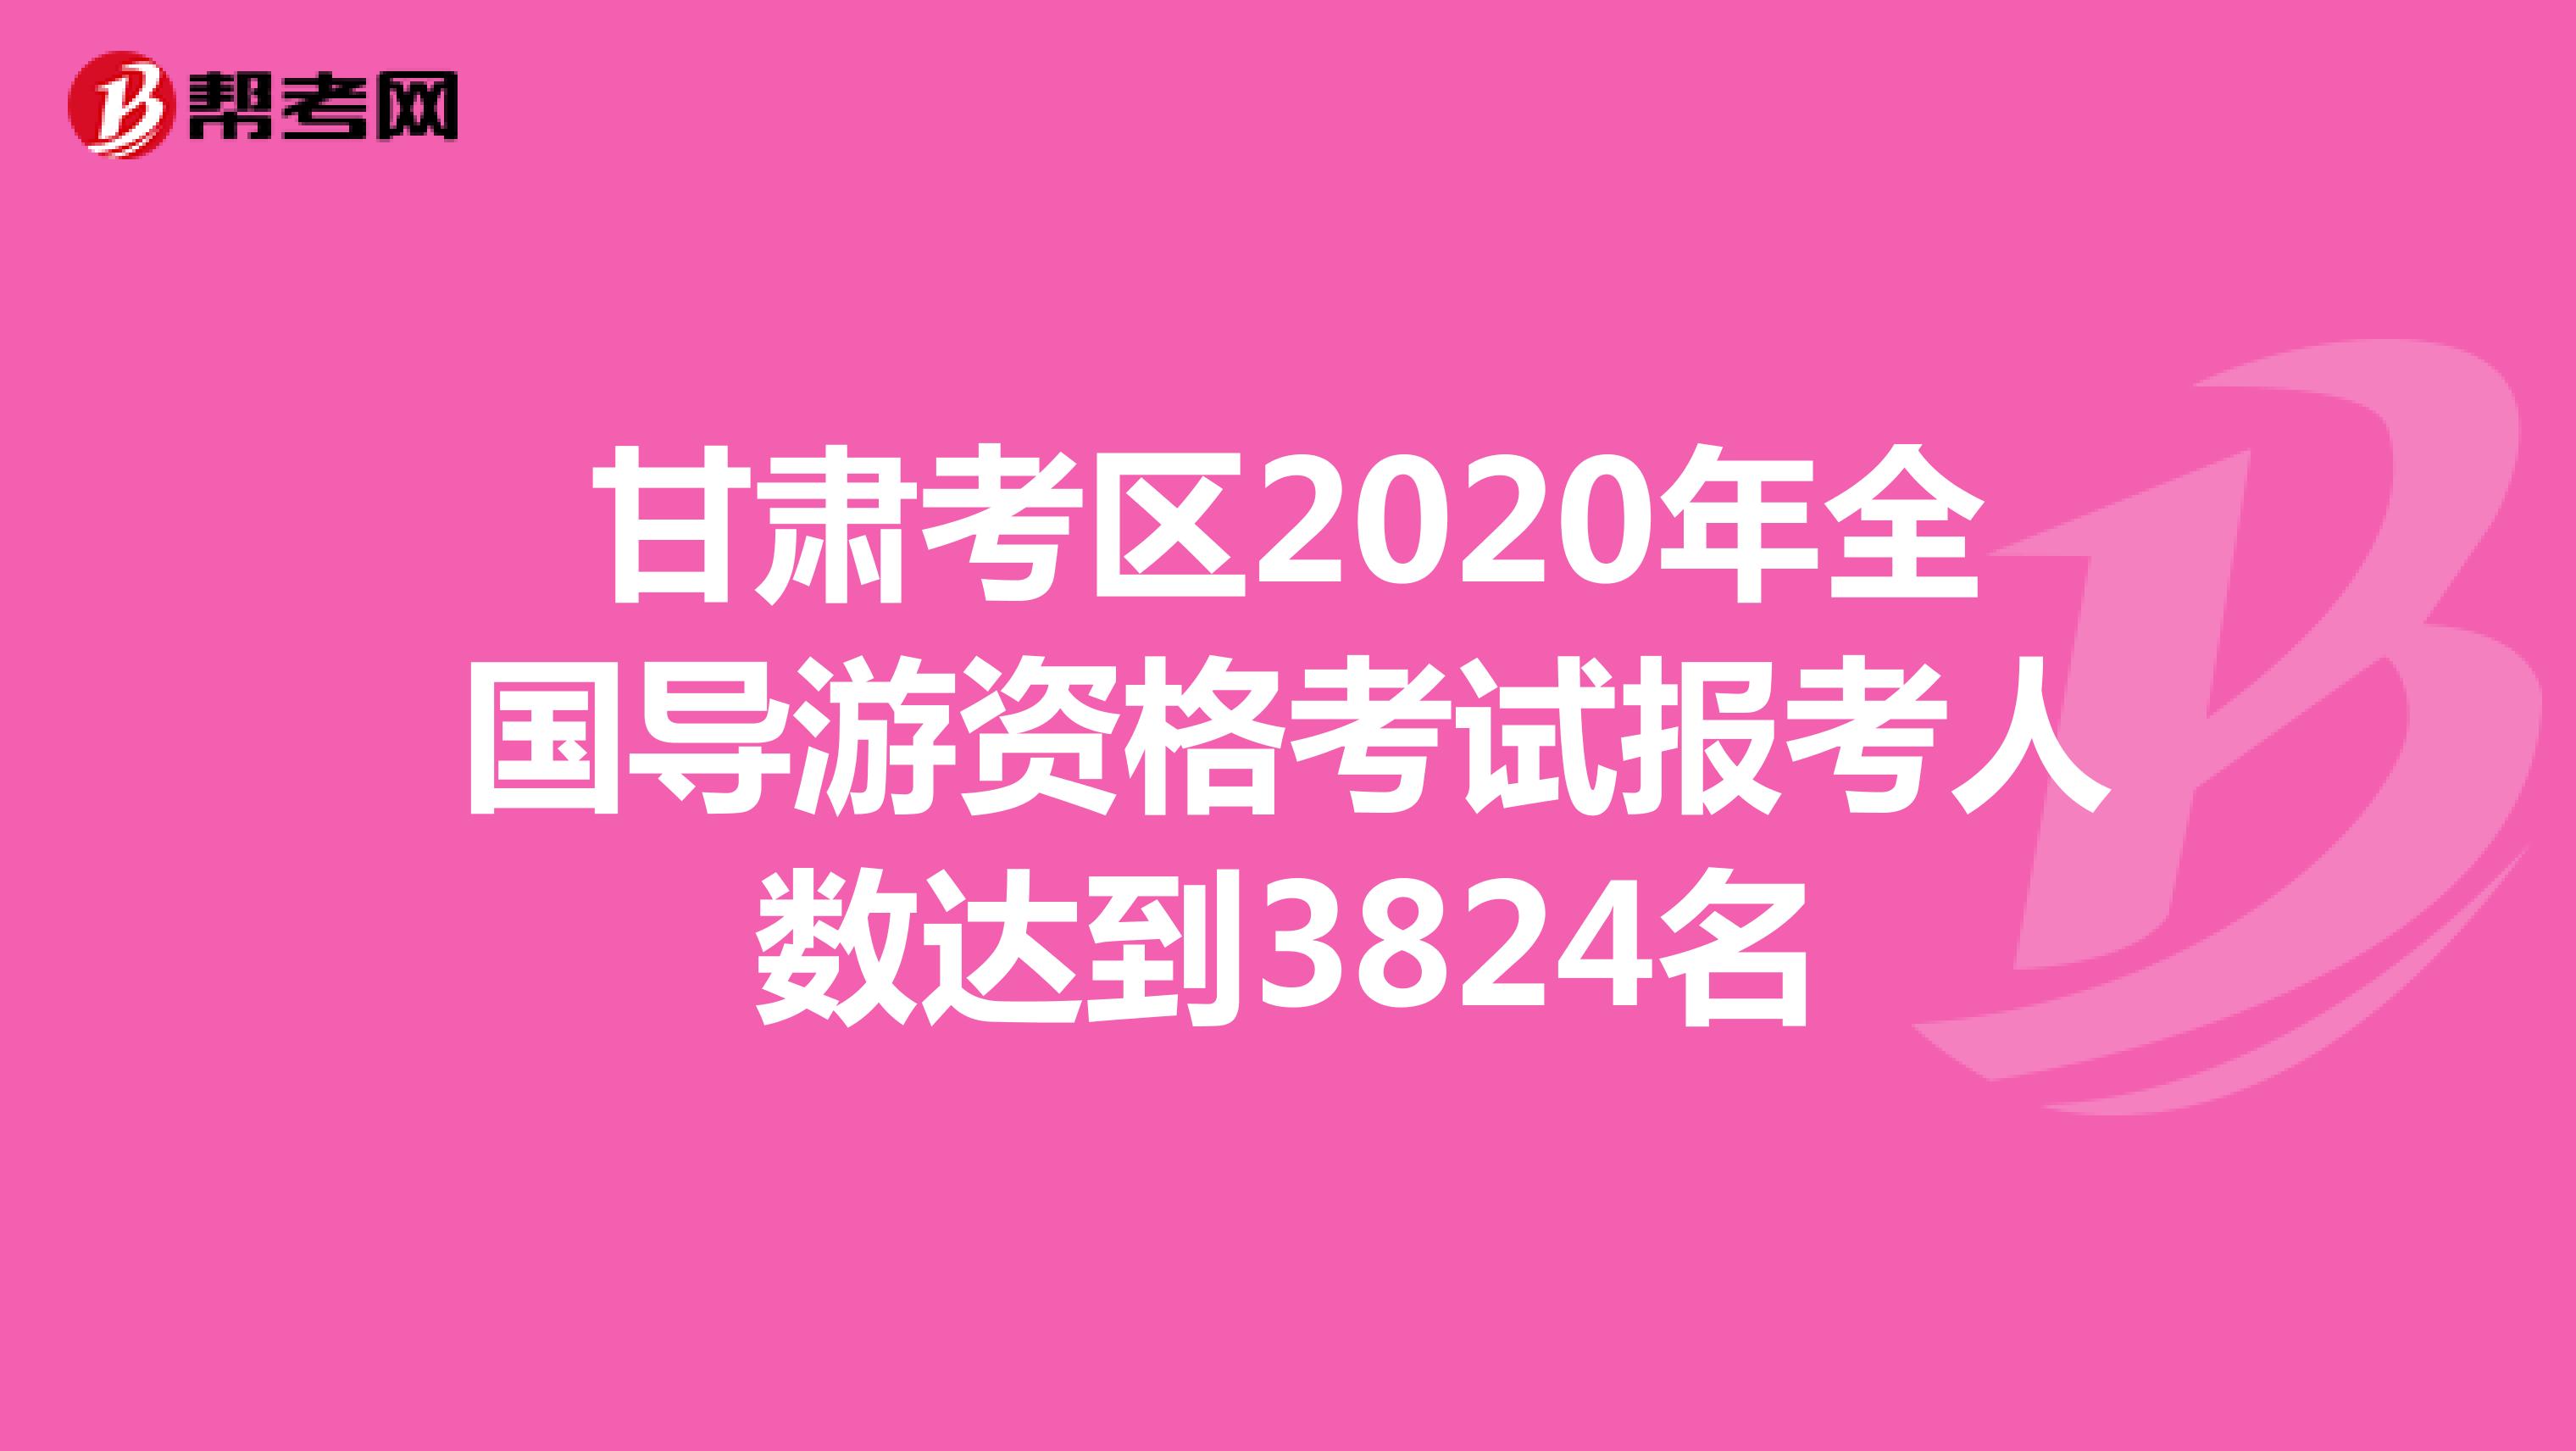 甘肃考区2020年全国导游资格考试报考人数达到3824名